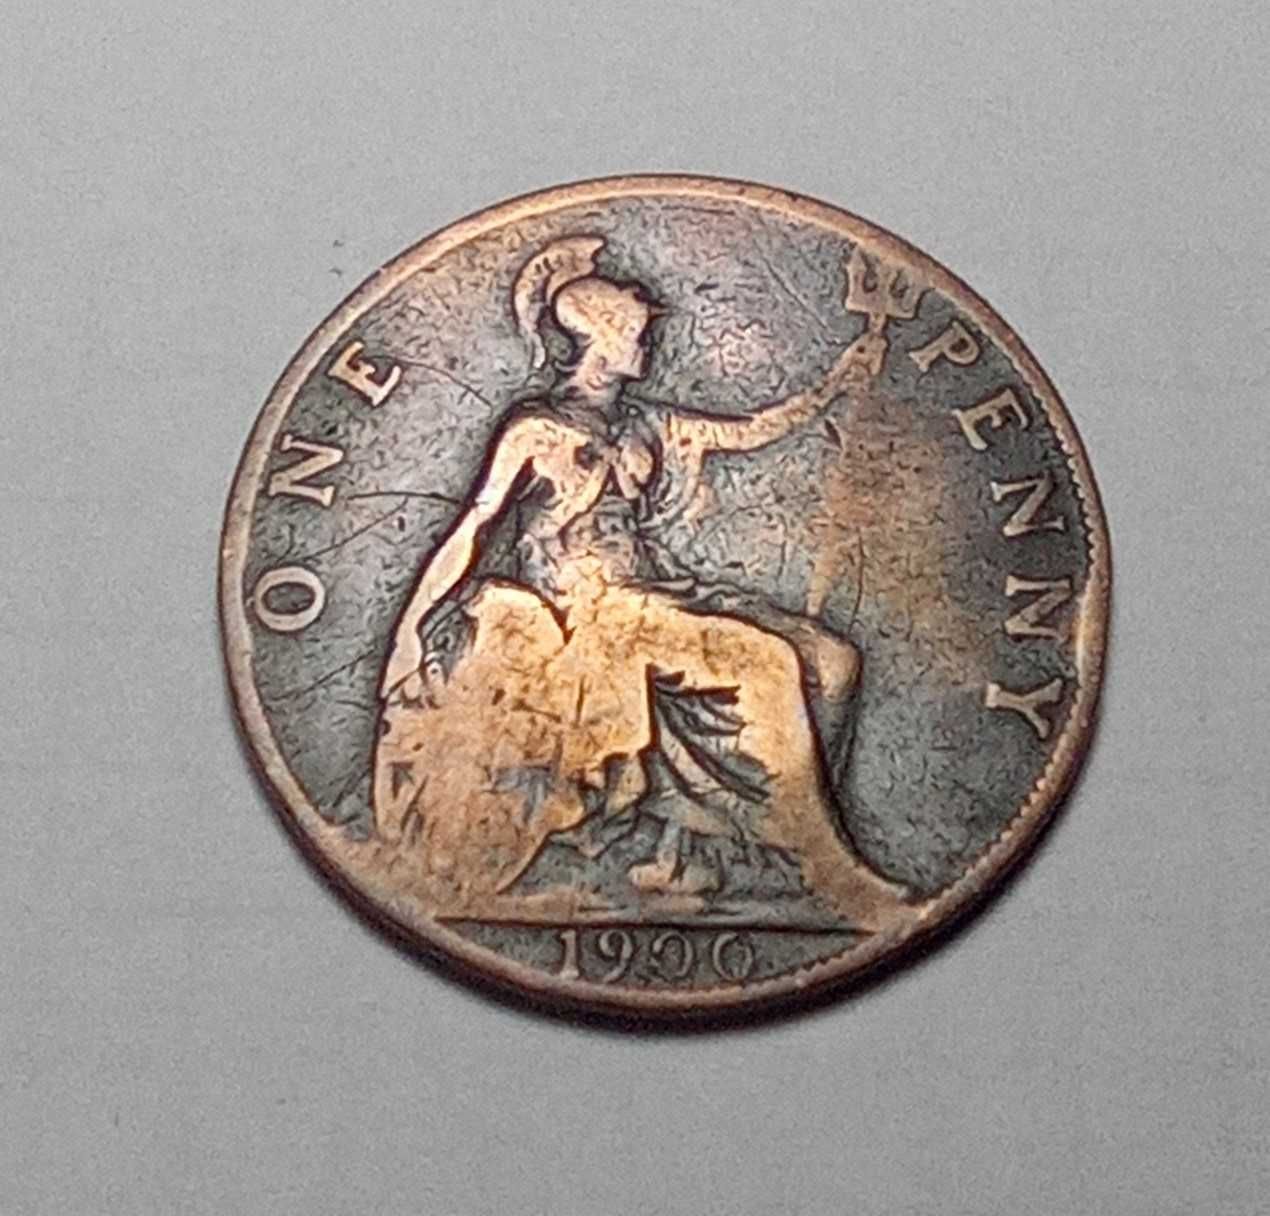 Monety Anglia One Penny różne roczniki. Do wyboru